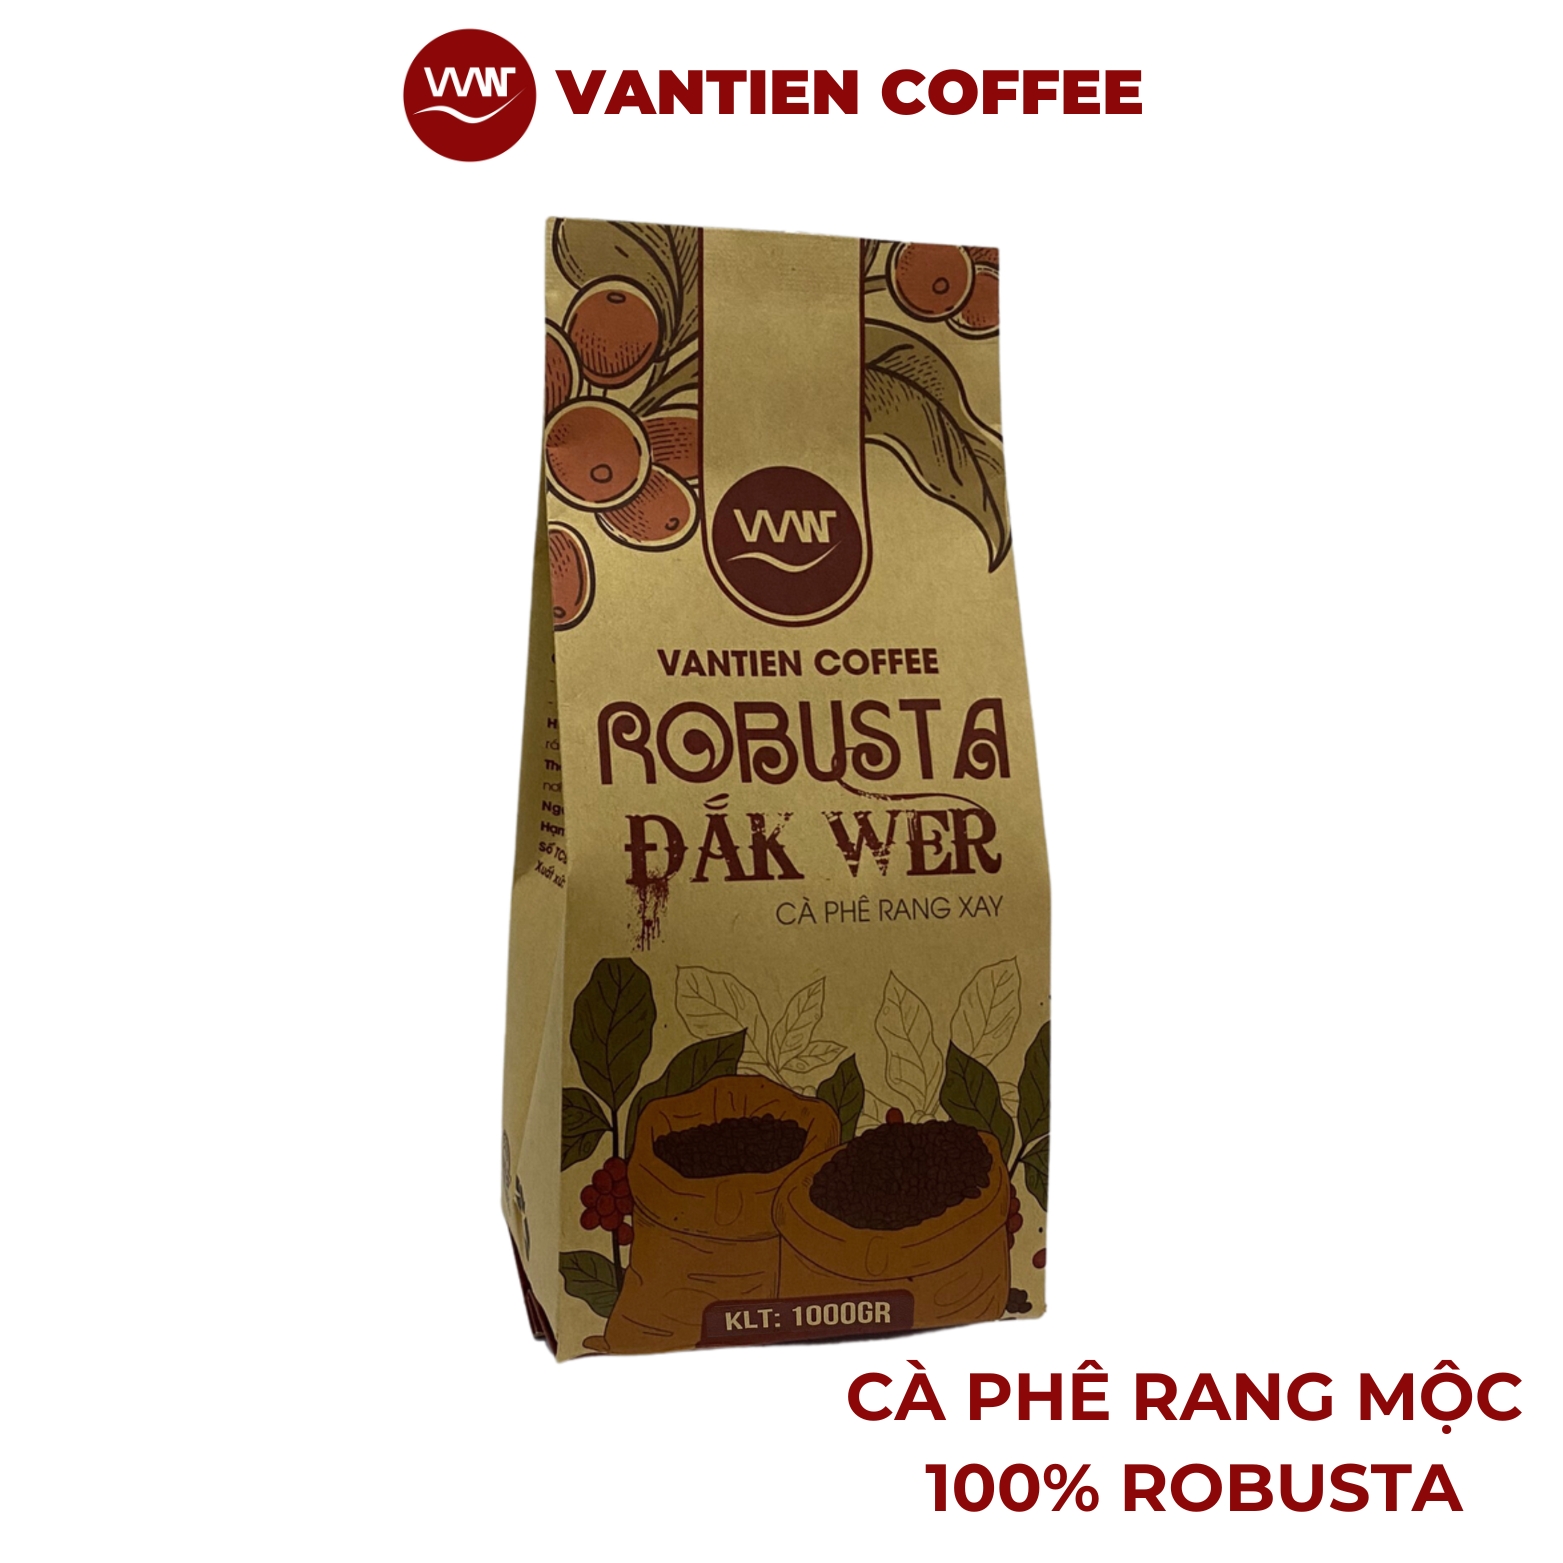 Thùng 8 túi Cà phê rang xay Robusta Đắk Wer Vantien Coffee 1kg/túi